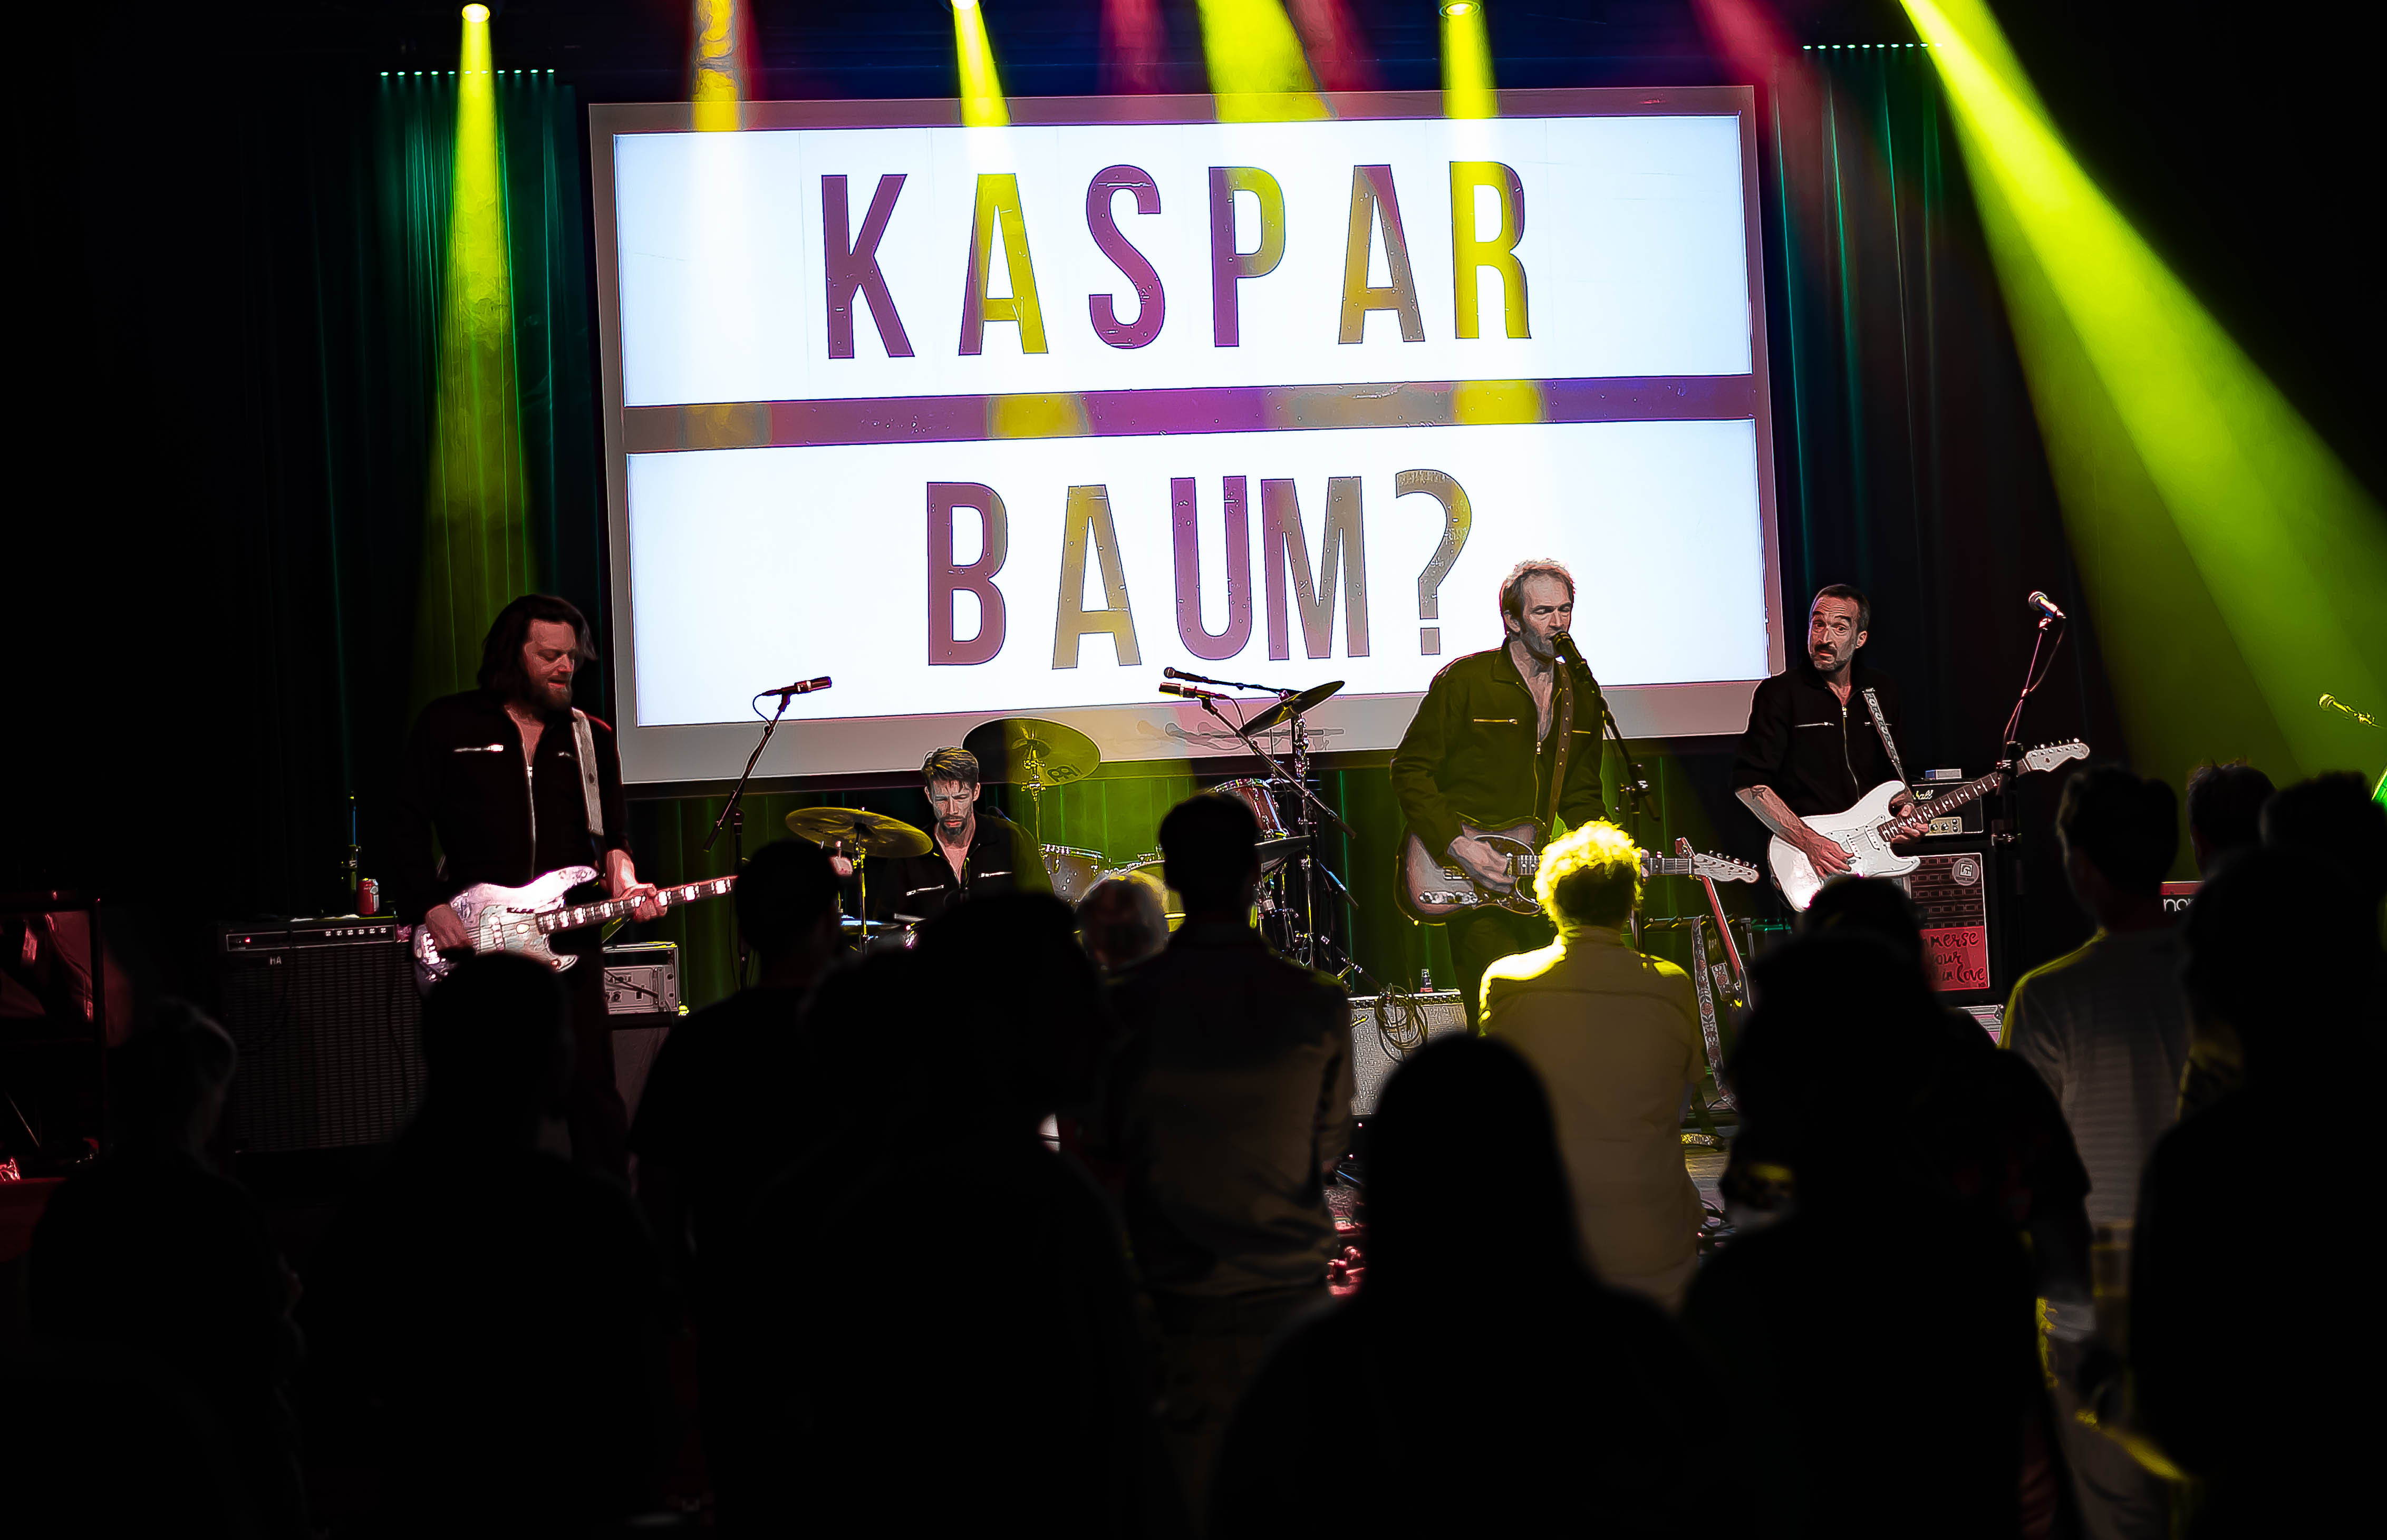 Kaspar Baum